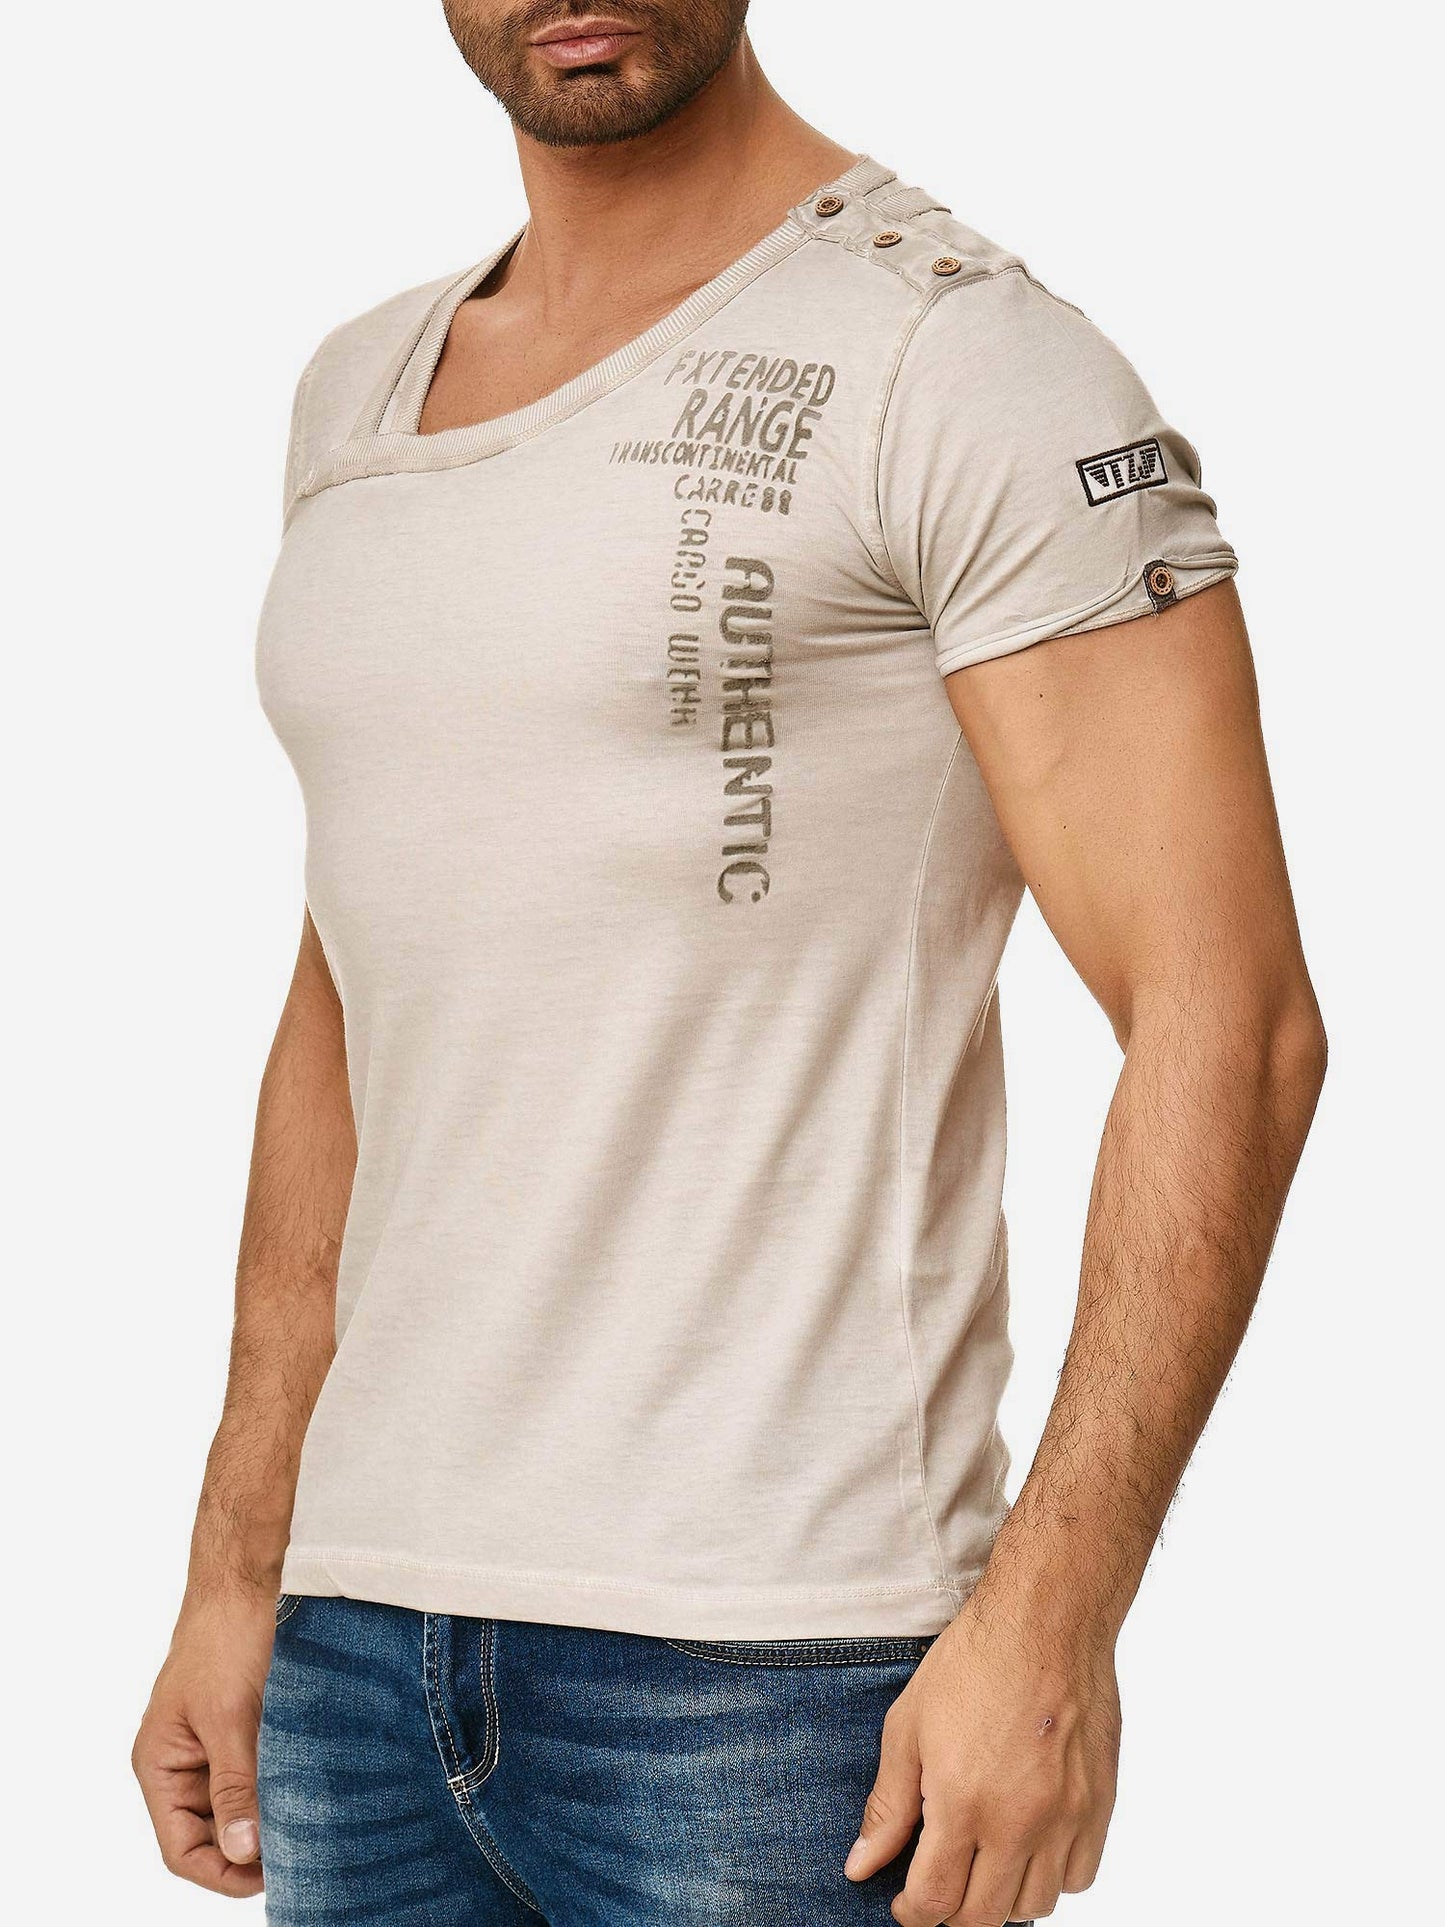 Tazzio Herren T-Shirt 4022